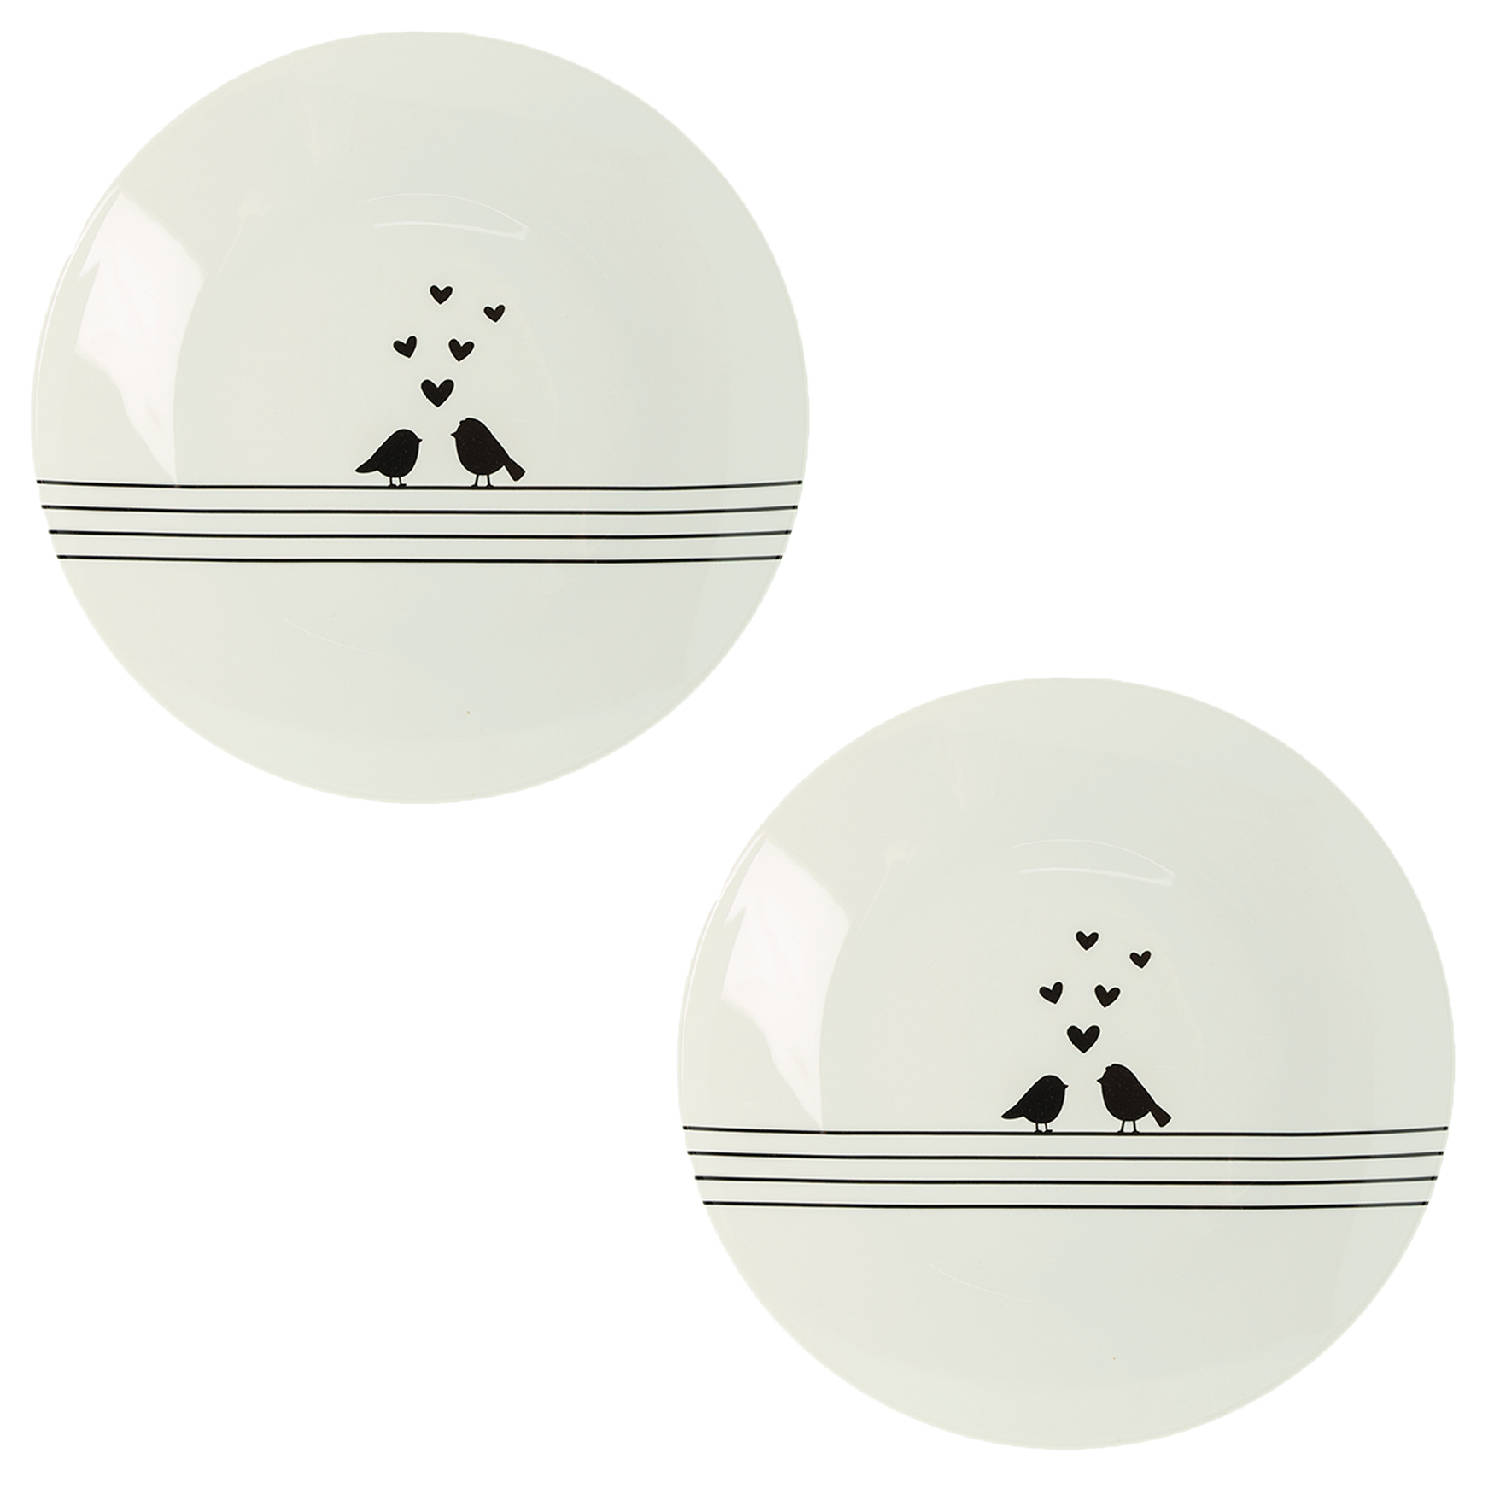 HAES DECO - Set van 2 Ontbijtborden - formaat Ø 20x2 cm - kleuren Wit / Zwart - Bedrukt Porselein - Collectie: Love Birds - Ontbijtbord, klein bord